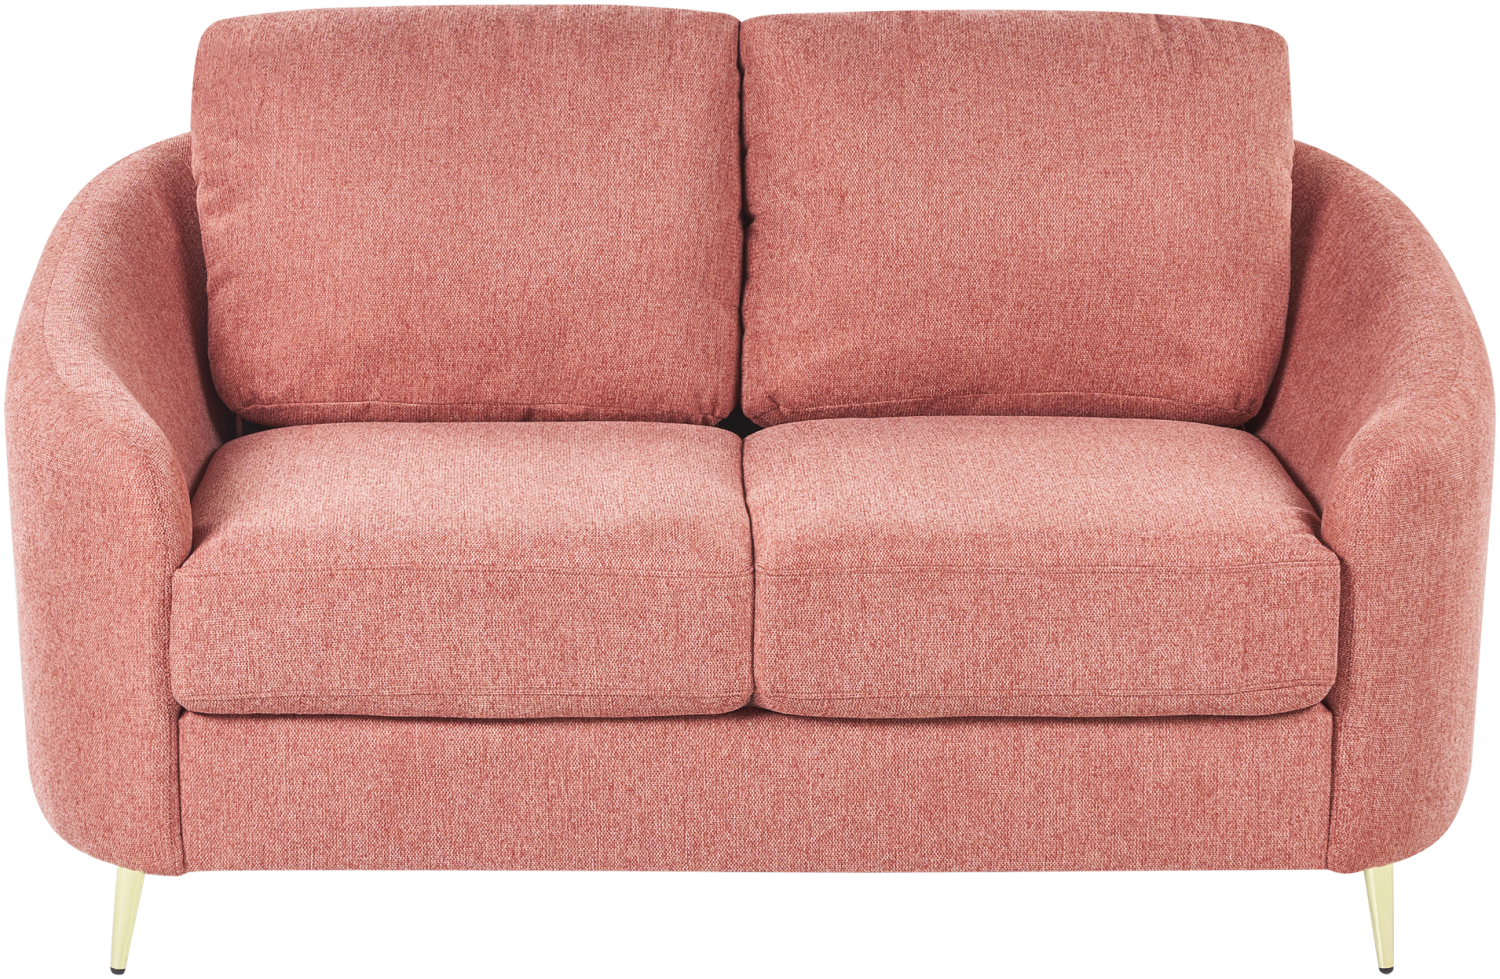 2-Sitzer Sofa Polsterbezug rosa gold TROSA Bild 1